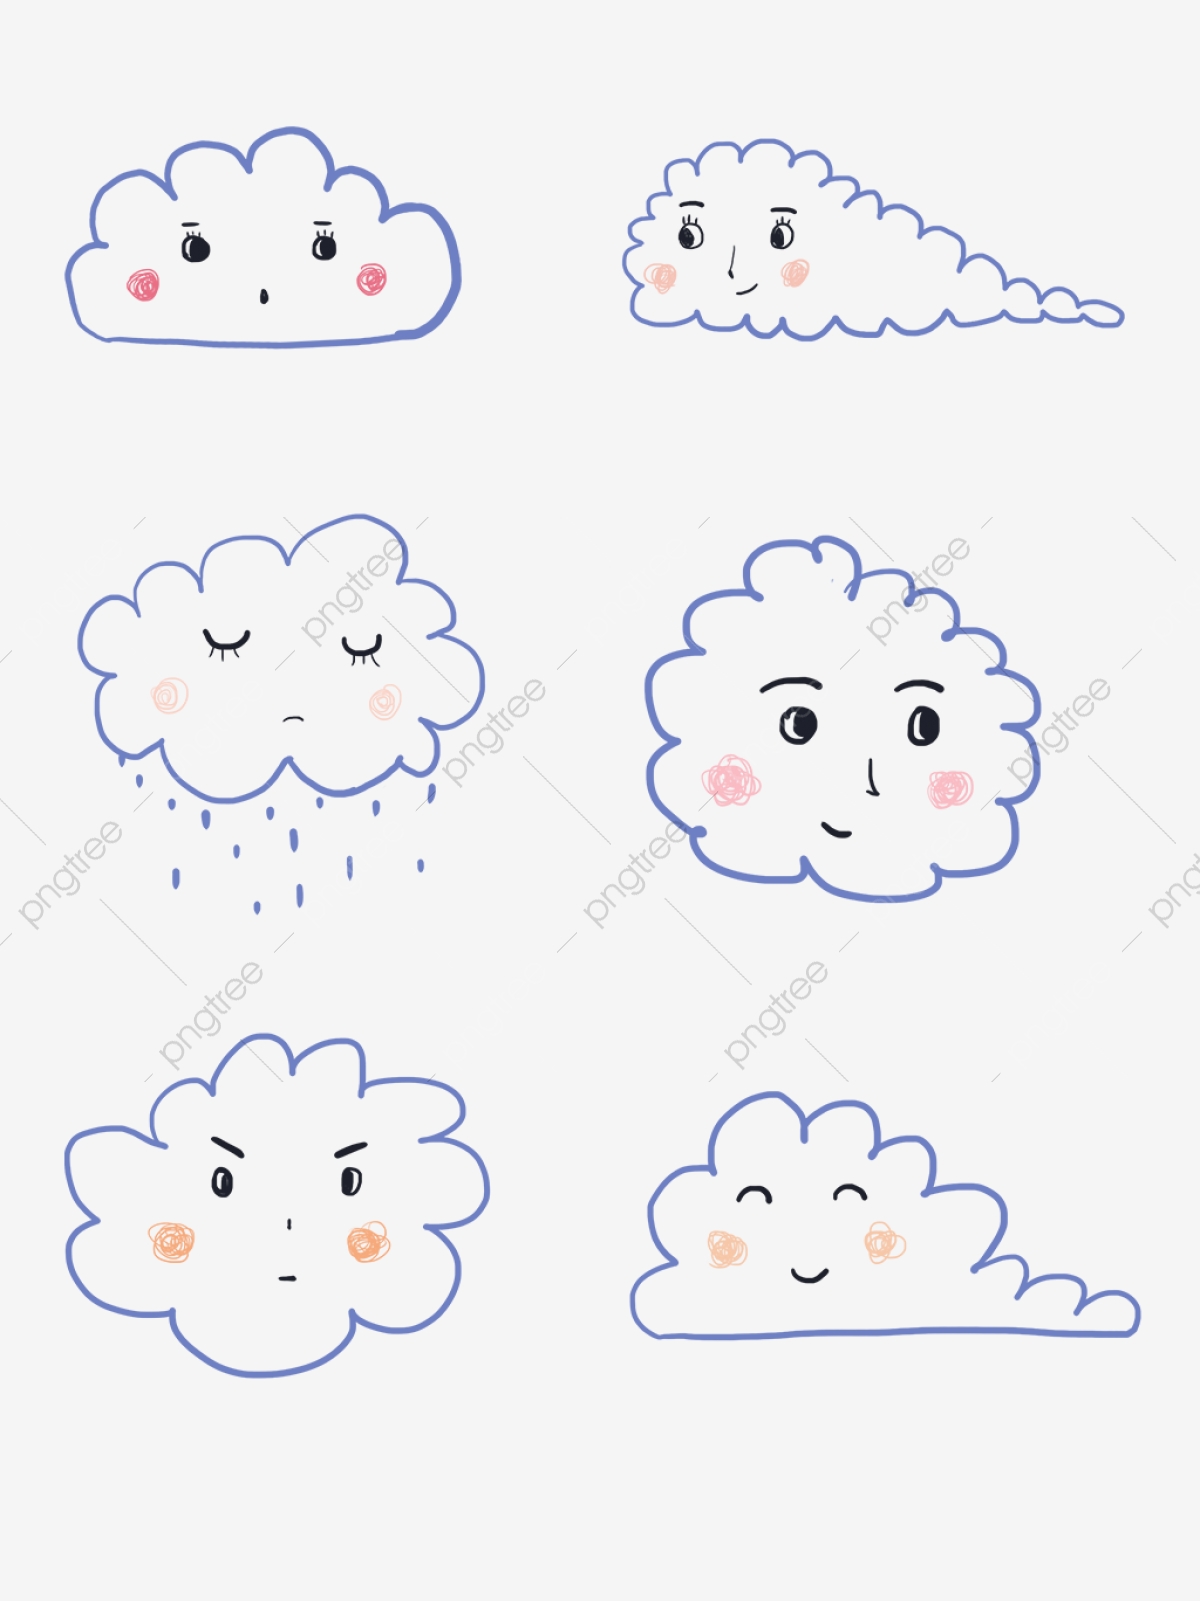 Tải xuống APK Cách vẽ đám mây dễ thương cho Android